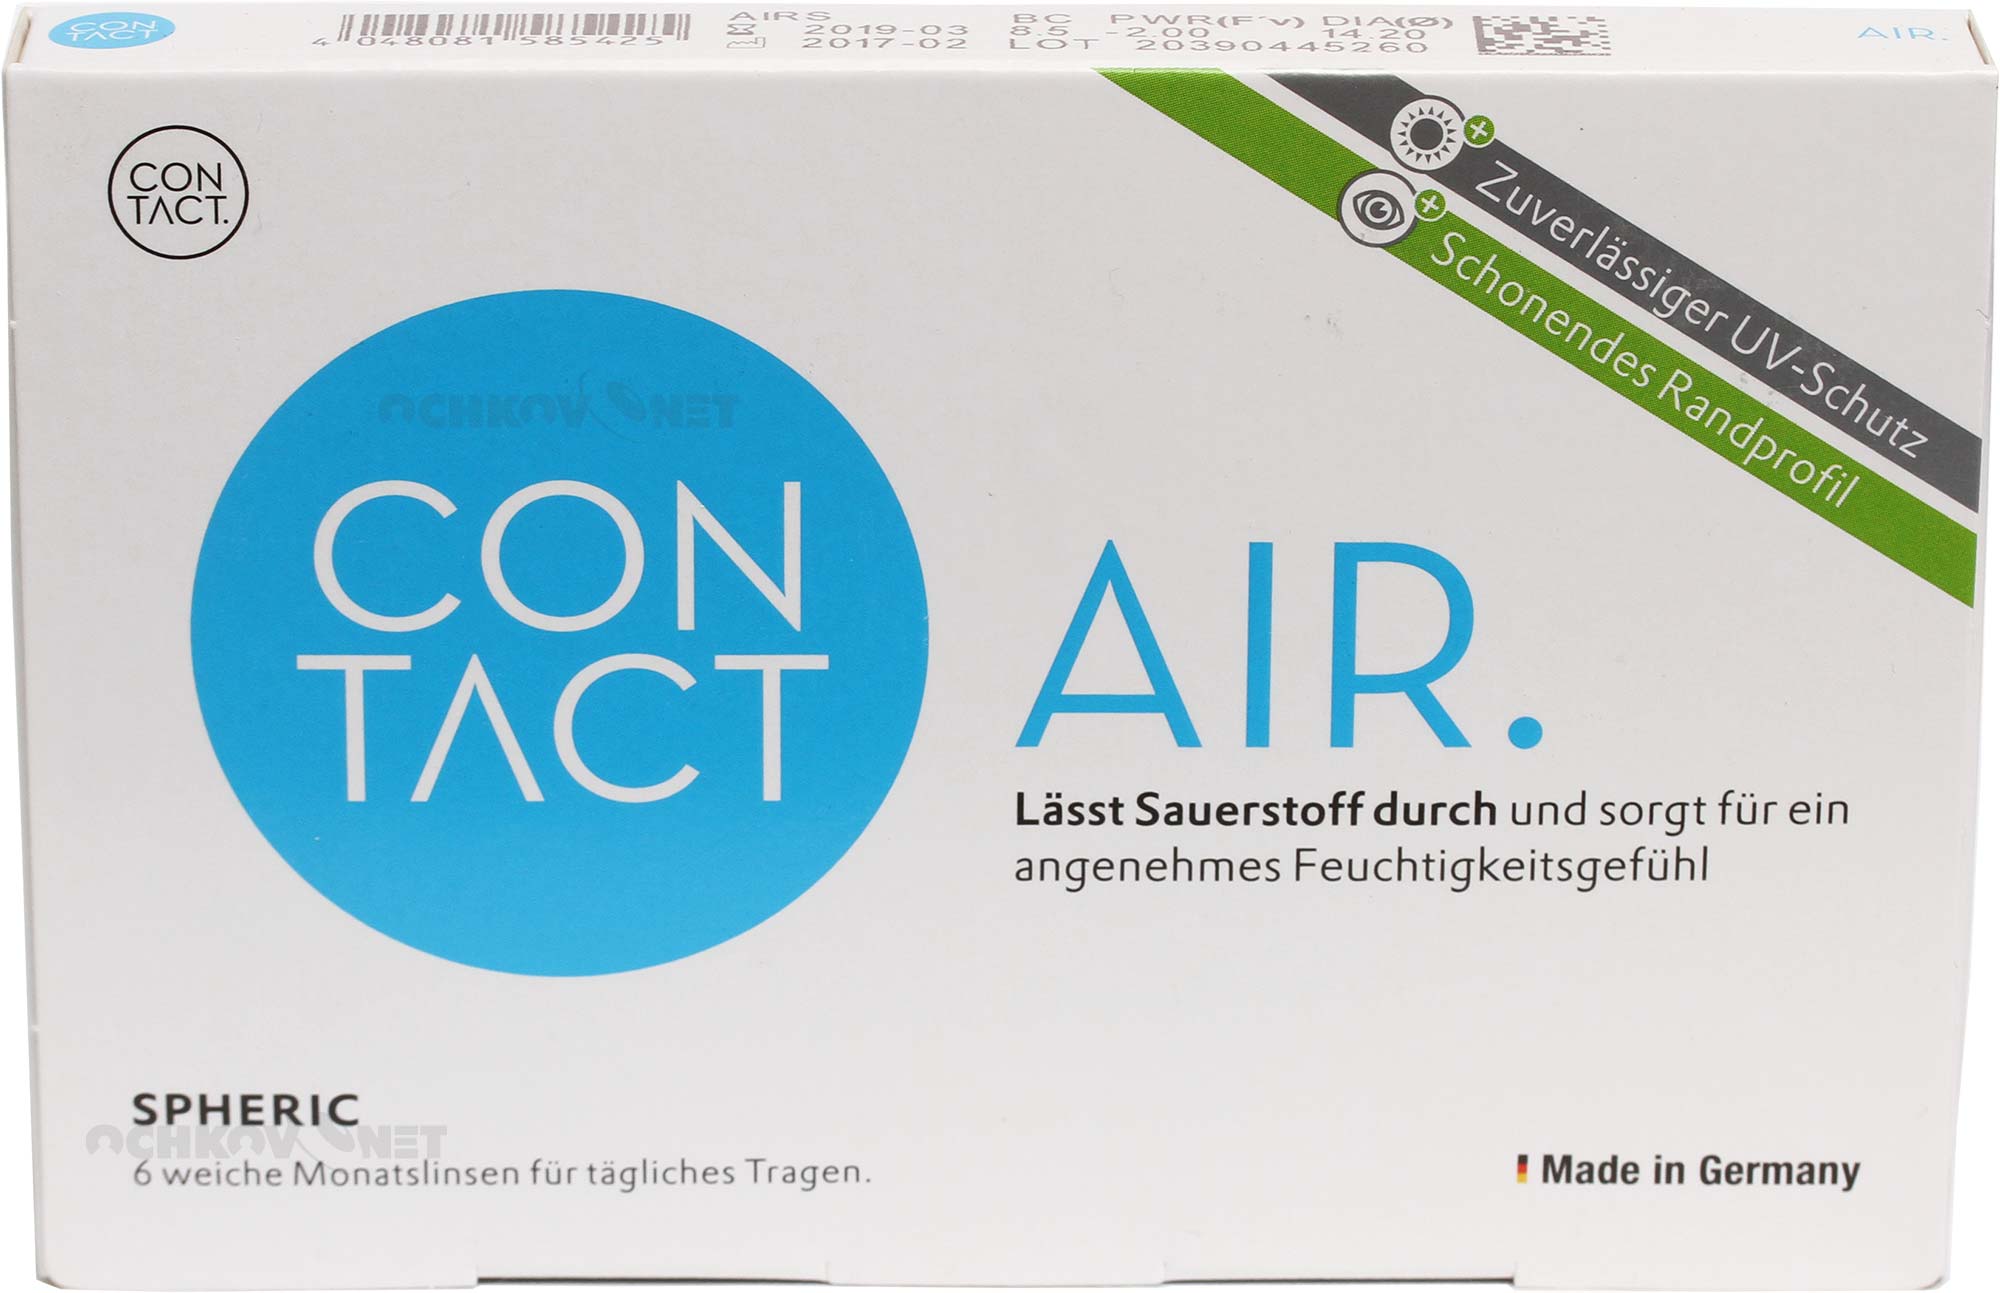 Контактные линзы Contact Air spheric 6 штук (плюсовые диоптрии), Wöhlk  - купить со скидкой